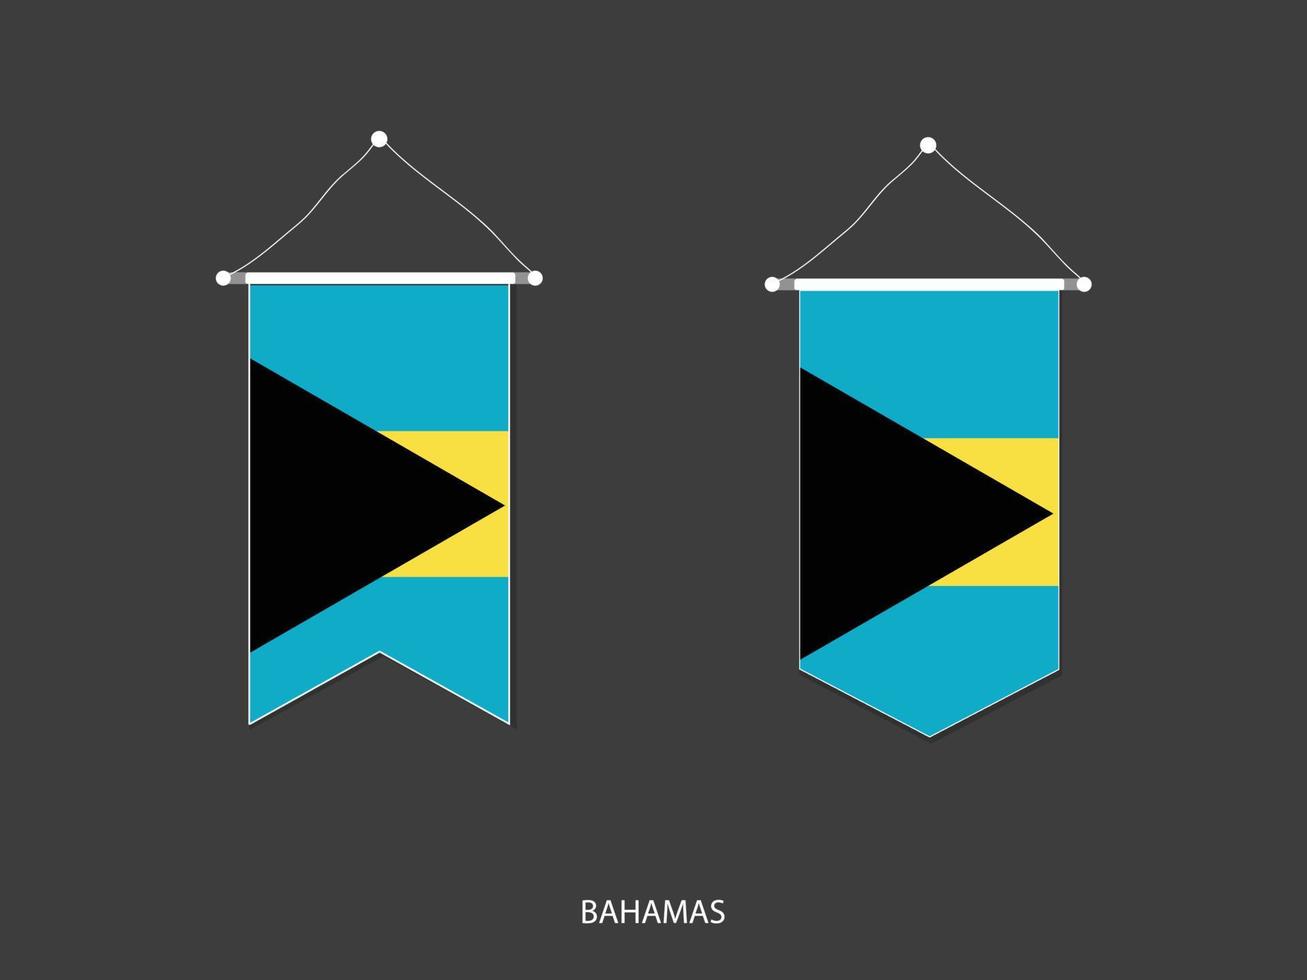 drapeau des bahamas sous diverses formes, vecteur de fanion de drapeau de football, illustration vectorielle.